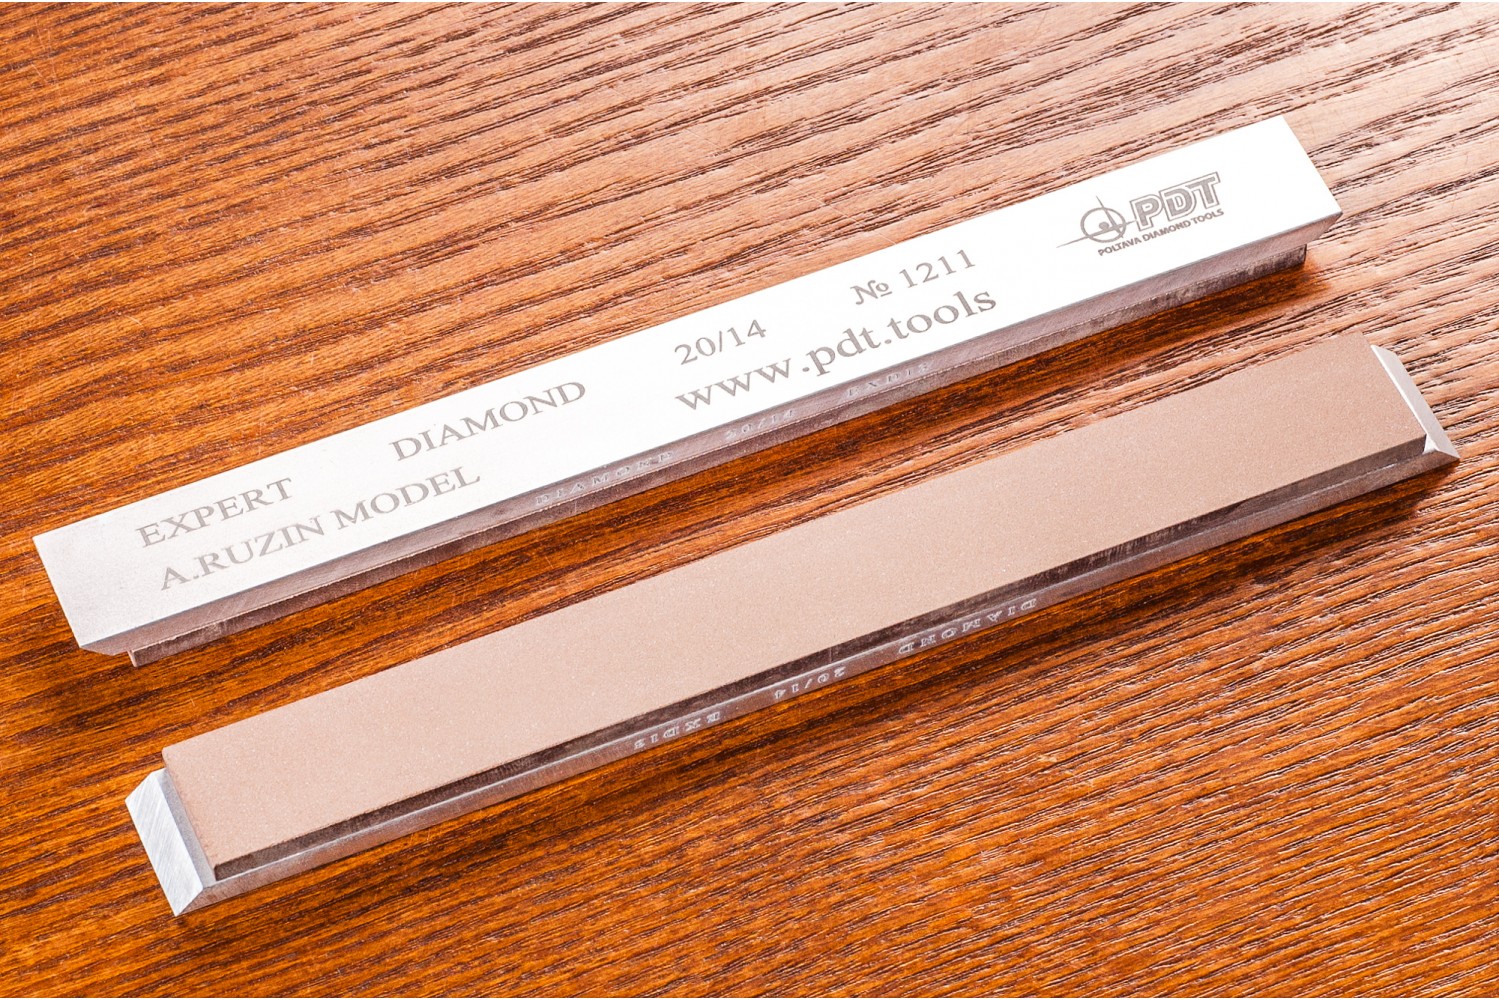 Алмазный брусок для заточки PDT EXPERT 150-17-3мм 20/14 мкм на алюминиевом бланке запасной точильный модуль для ножей с углом заточки 20 градусов к электрическому станку chef schoice 2100